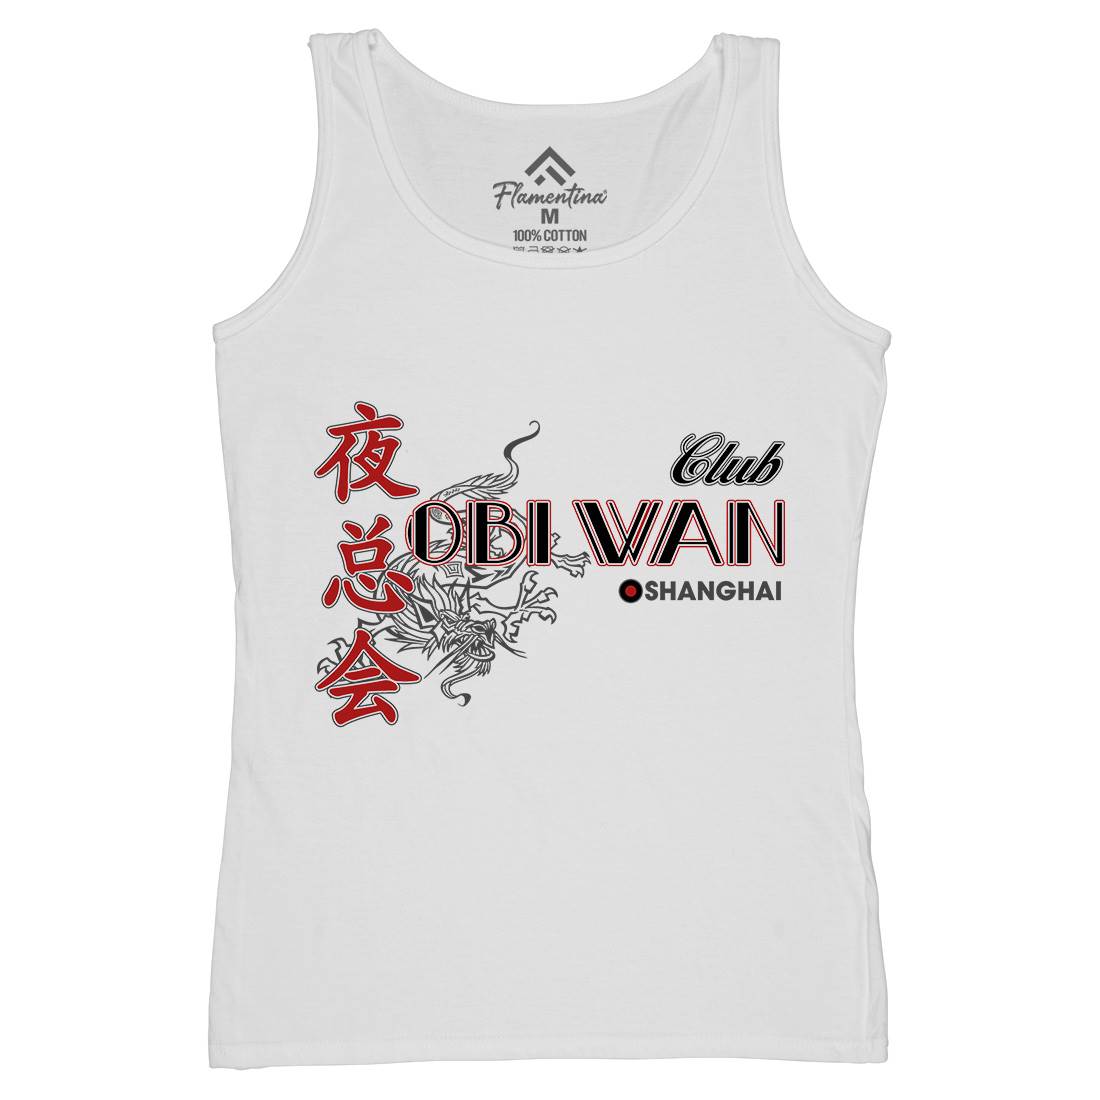 Club Obi Wan Womens Organic Tank Top Vest Retro D385